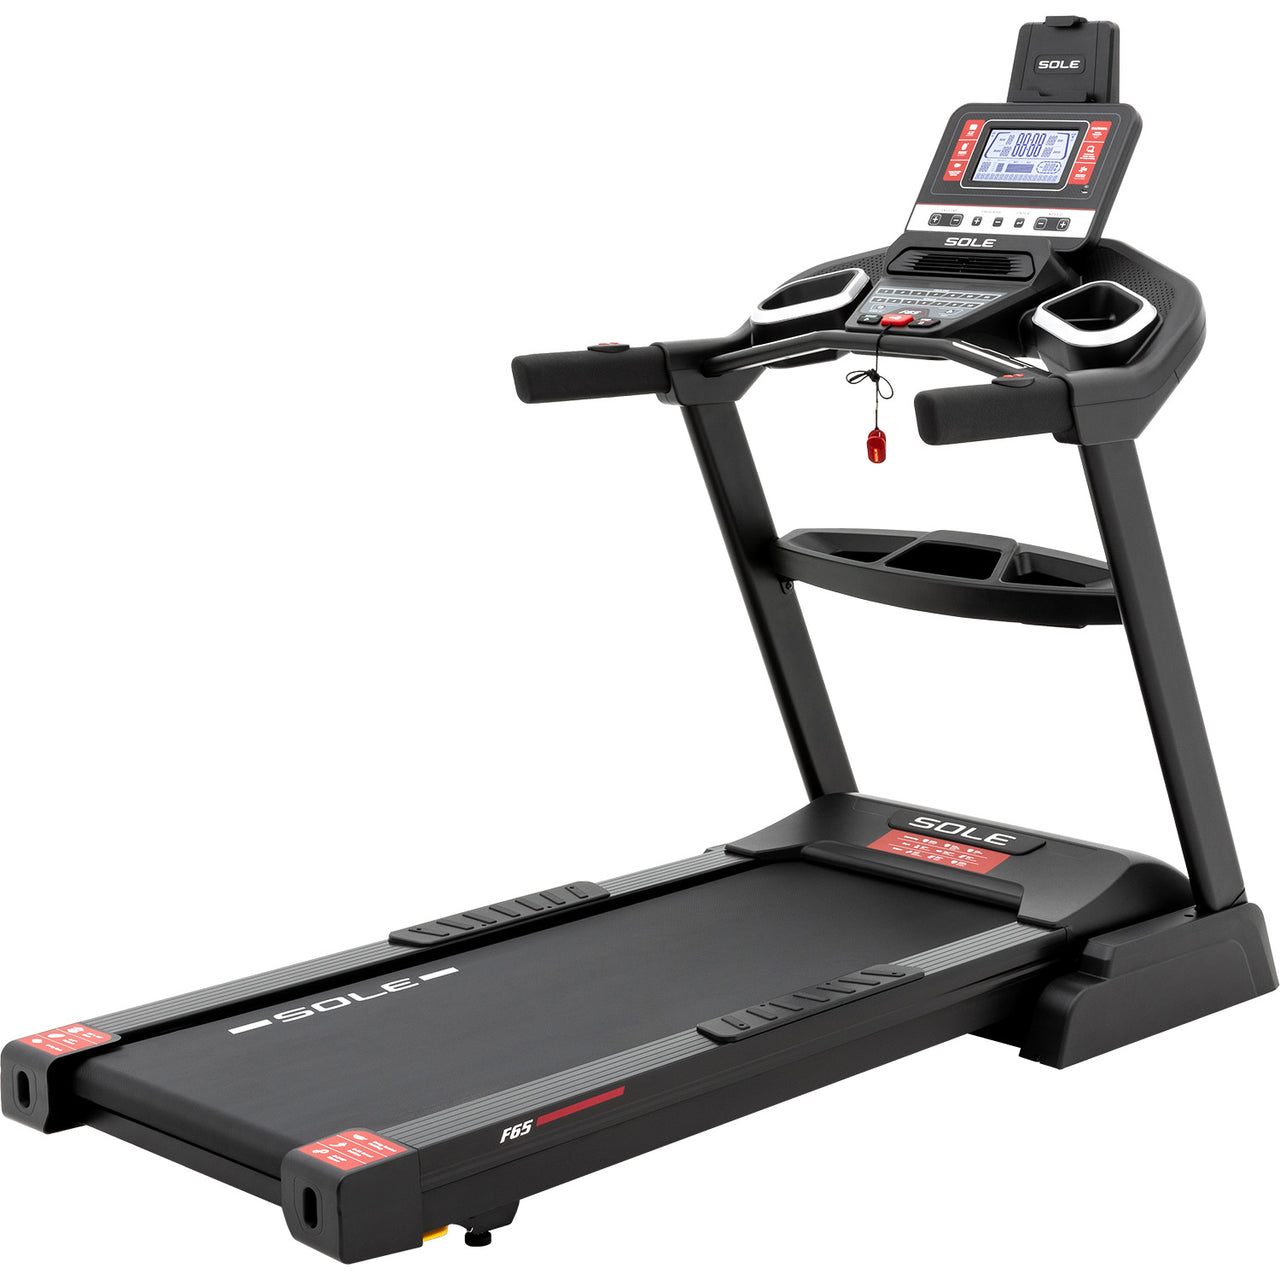 NEW!! Sole Fitness F65 Treadmill